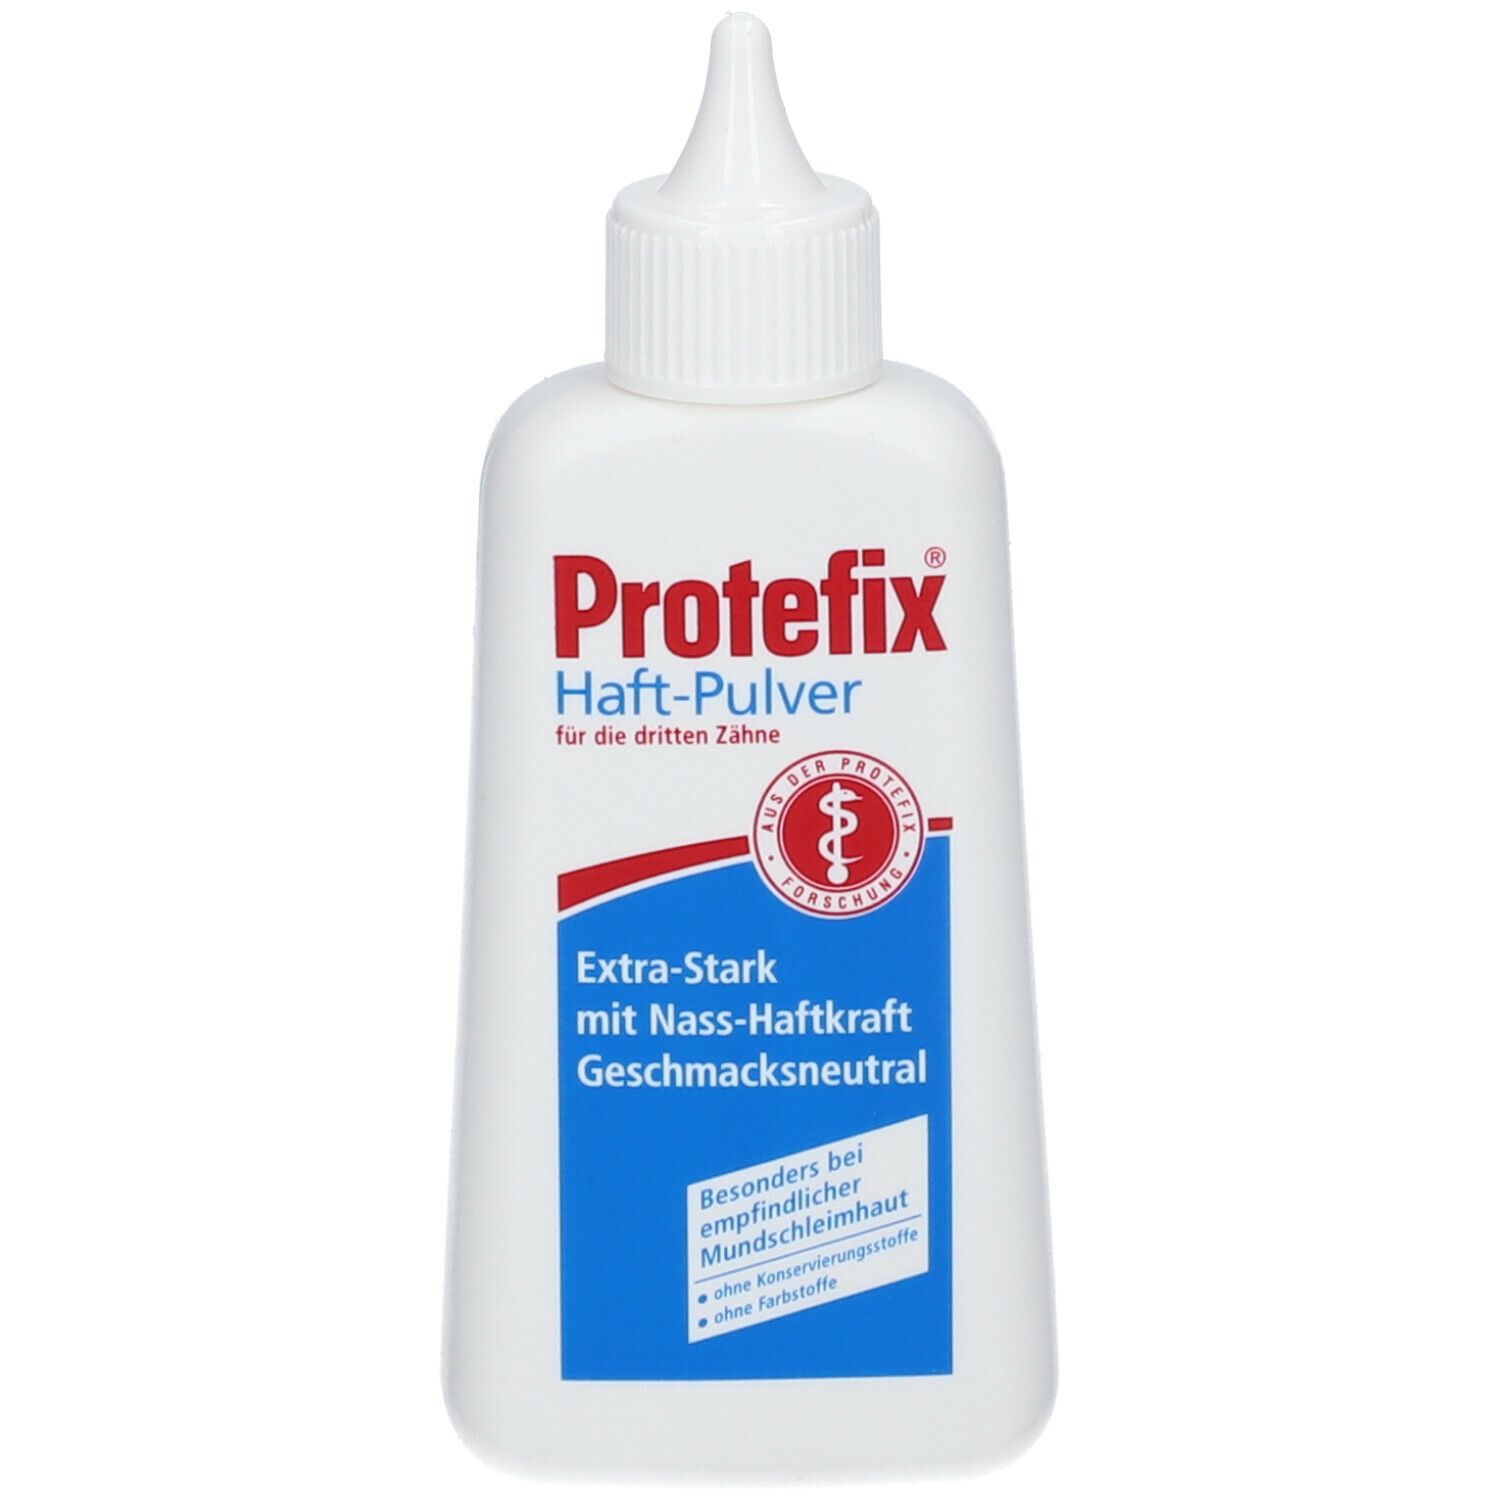 Protefix® Poudre Adhésive